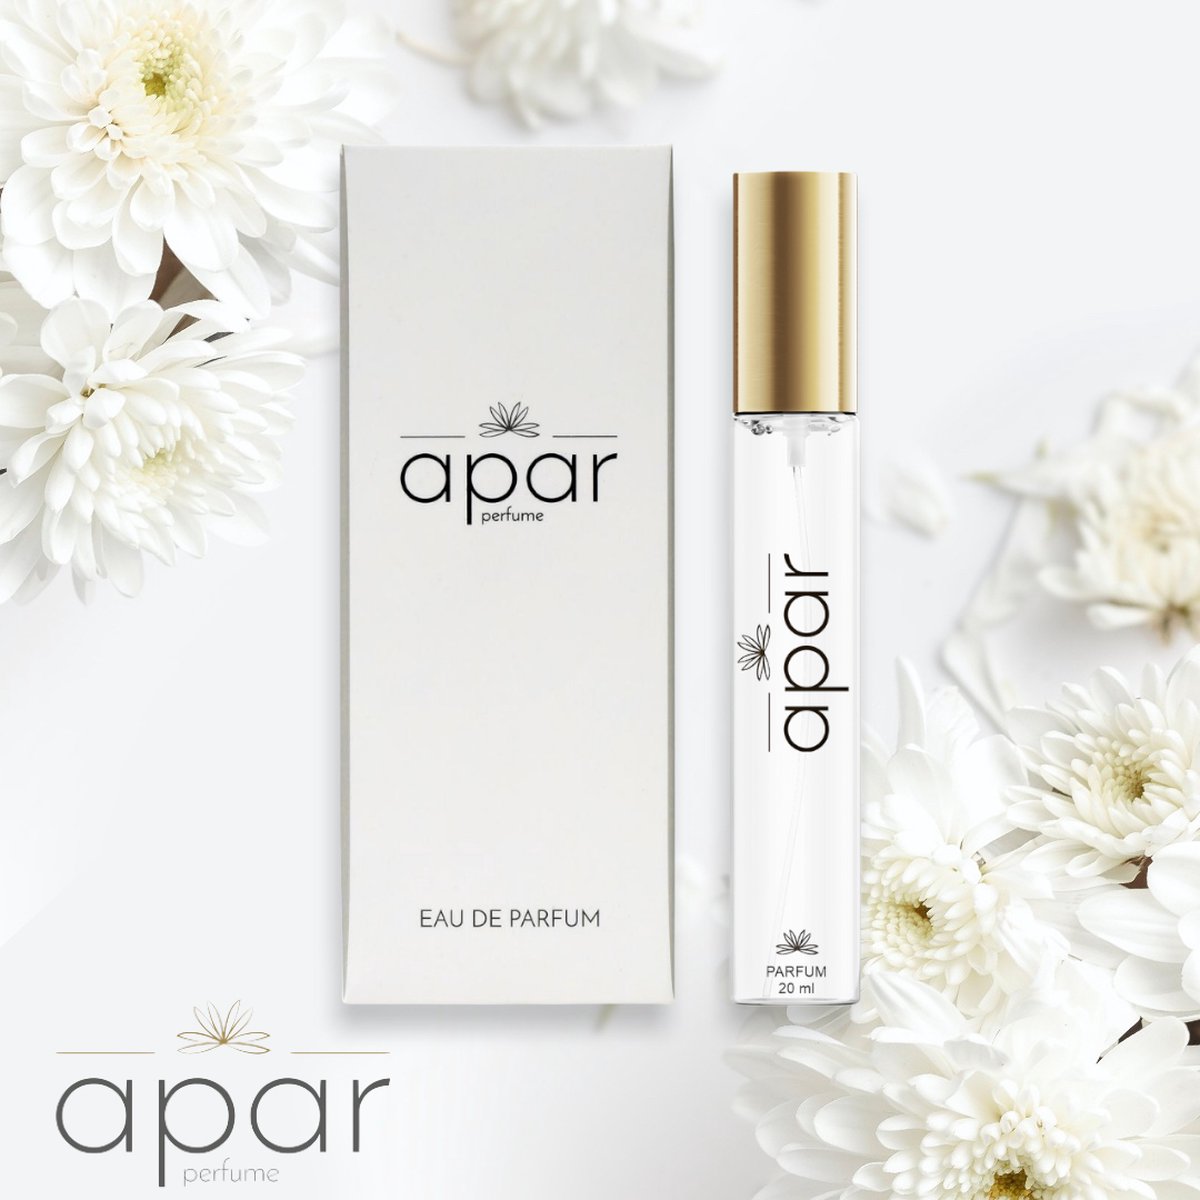 ❤Dure merk geuren voor een eerlijke prijs❤APAR Parfum EDP - 20ml - Nummer F265 Standard -